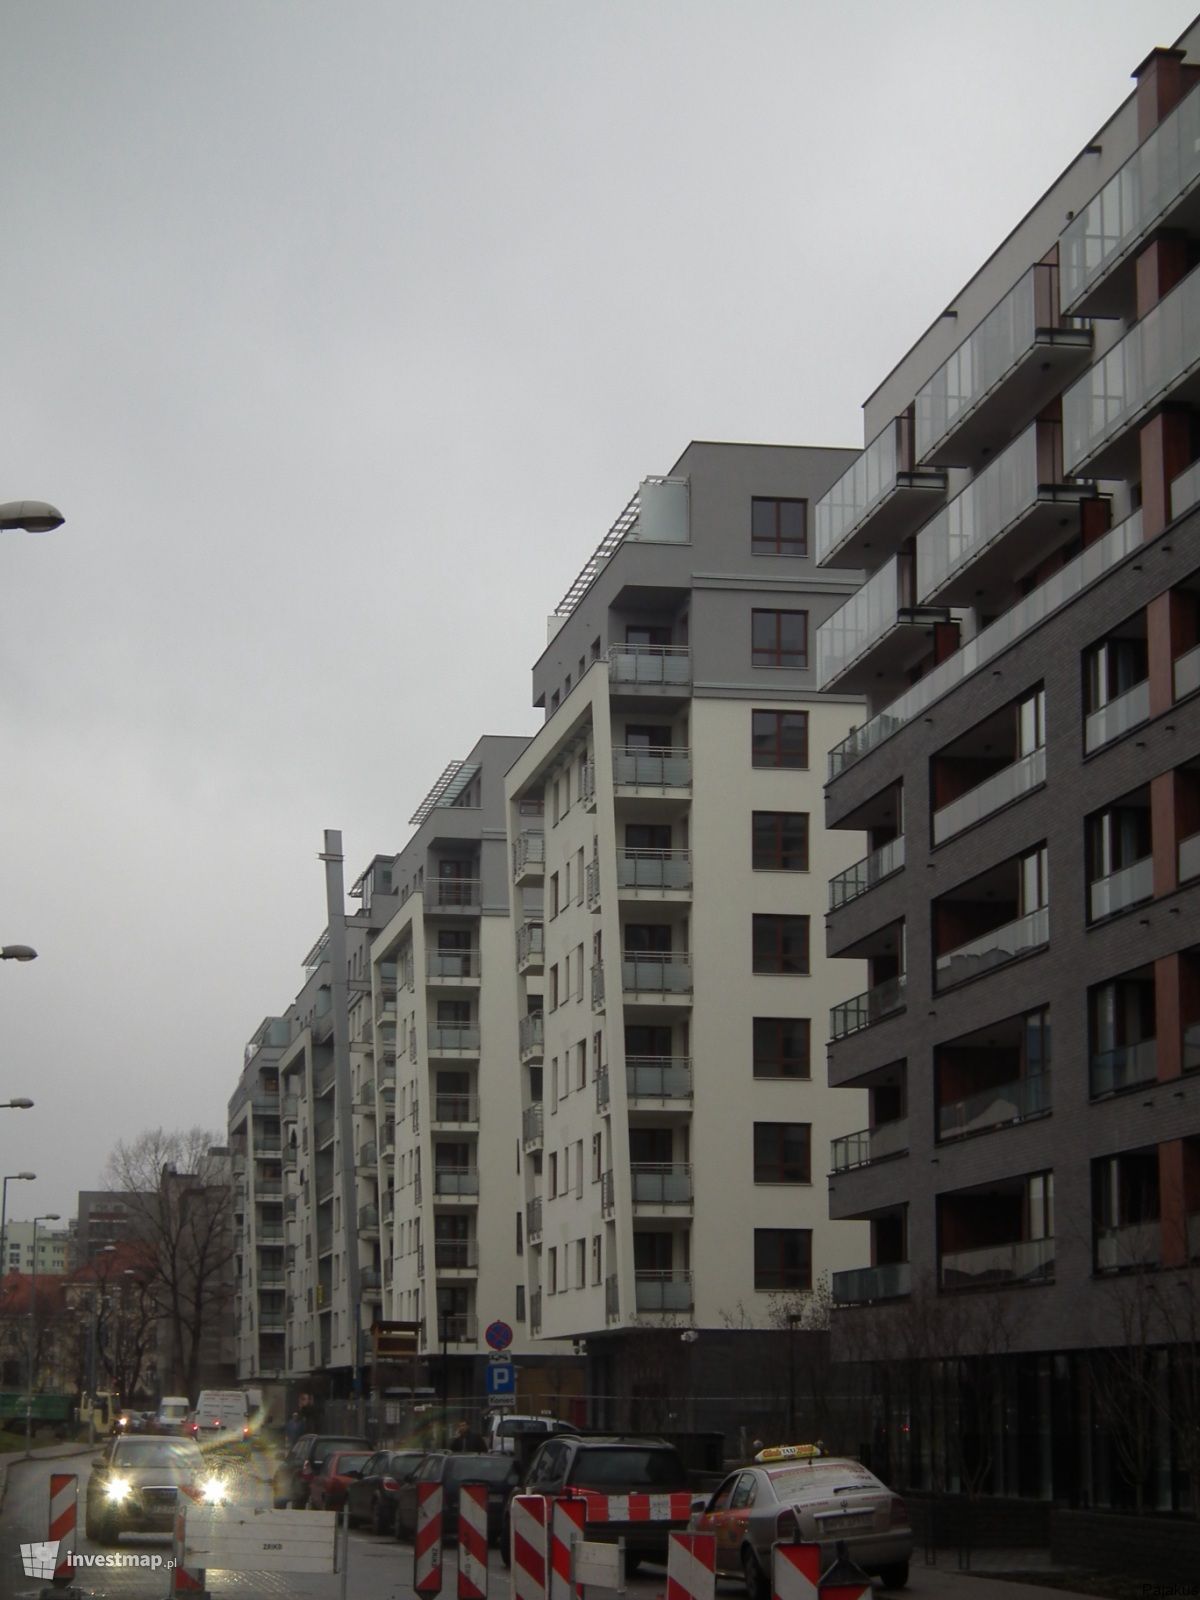 Zdjęcie [Warszawa] Kompleks apartamentowy "Capital Art Apartments" fot. Pajakus 